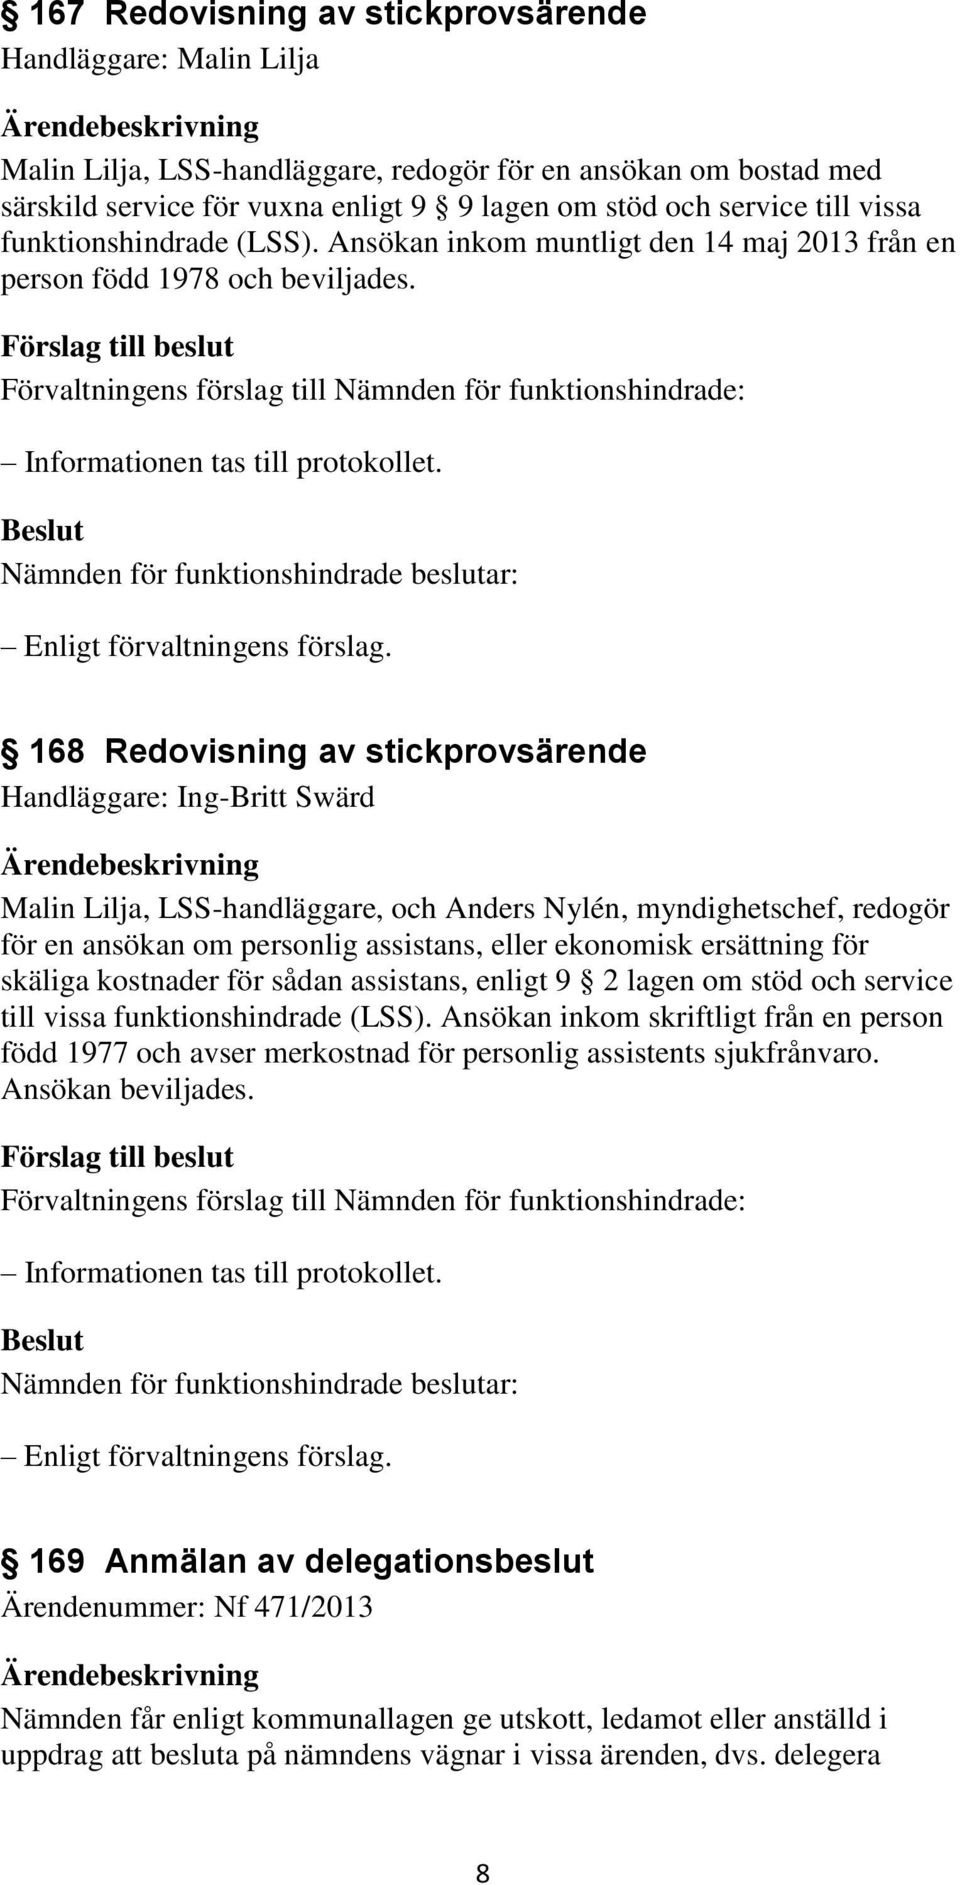 168 Redovisning av stickprovsärende Handläggare: Ing-Britt Swärd Malin Lilja, LSS-handläggare, och Anders Nylén, myndighetschef, redogör för en ansökan om personlig assistans, eller ekonomisk